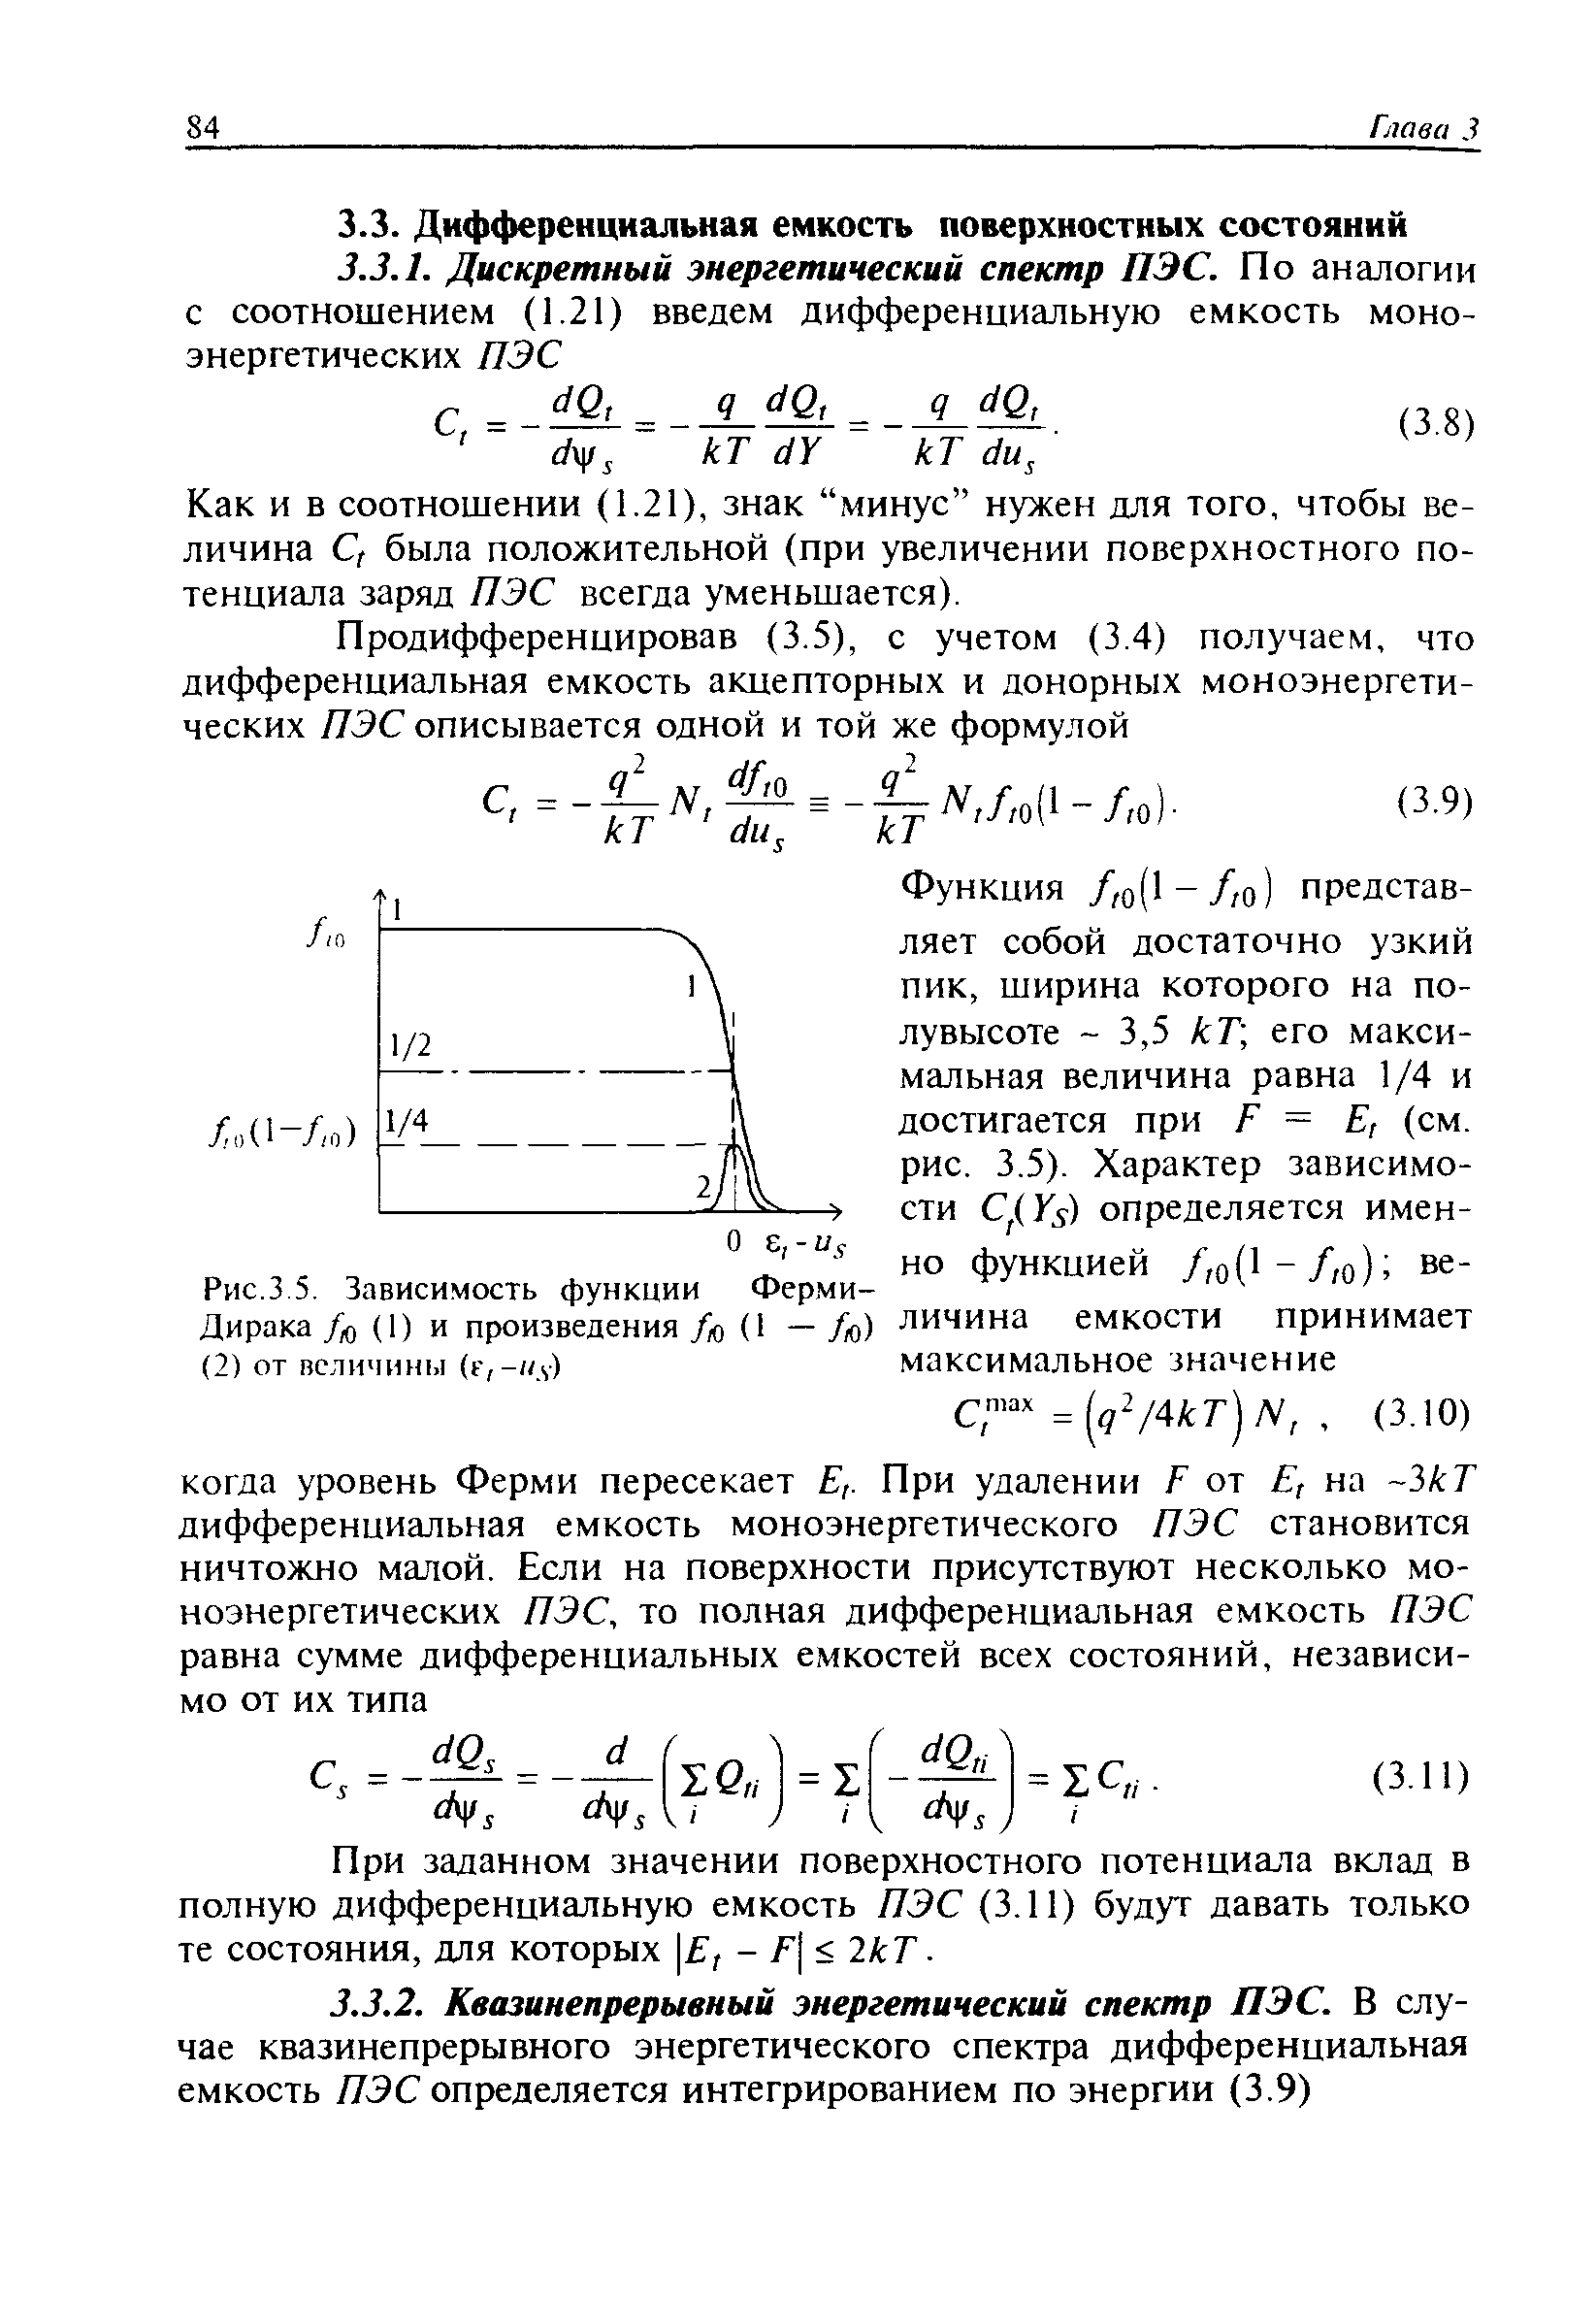 Рис.3 5. Зависимость функции Ферми-Дирака /й (1) и произведения /ю (1 — /ю) (2) от величины (г,- л)
